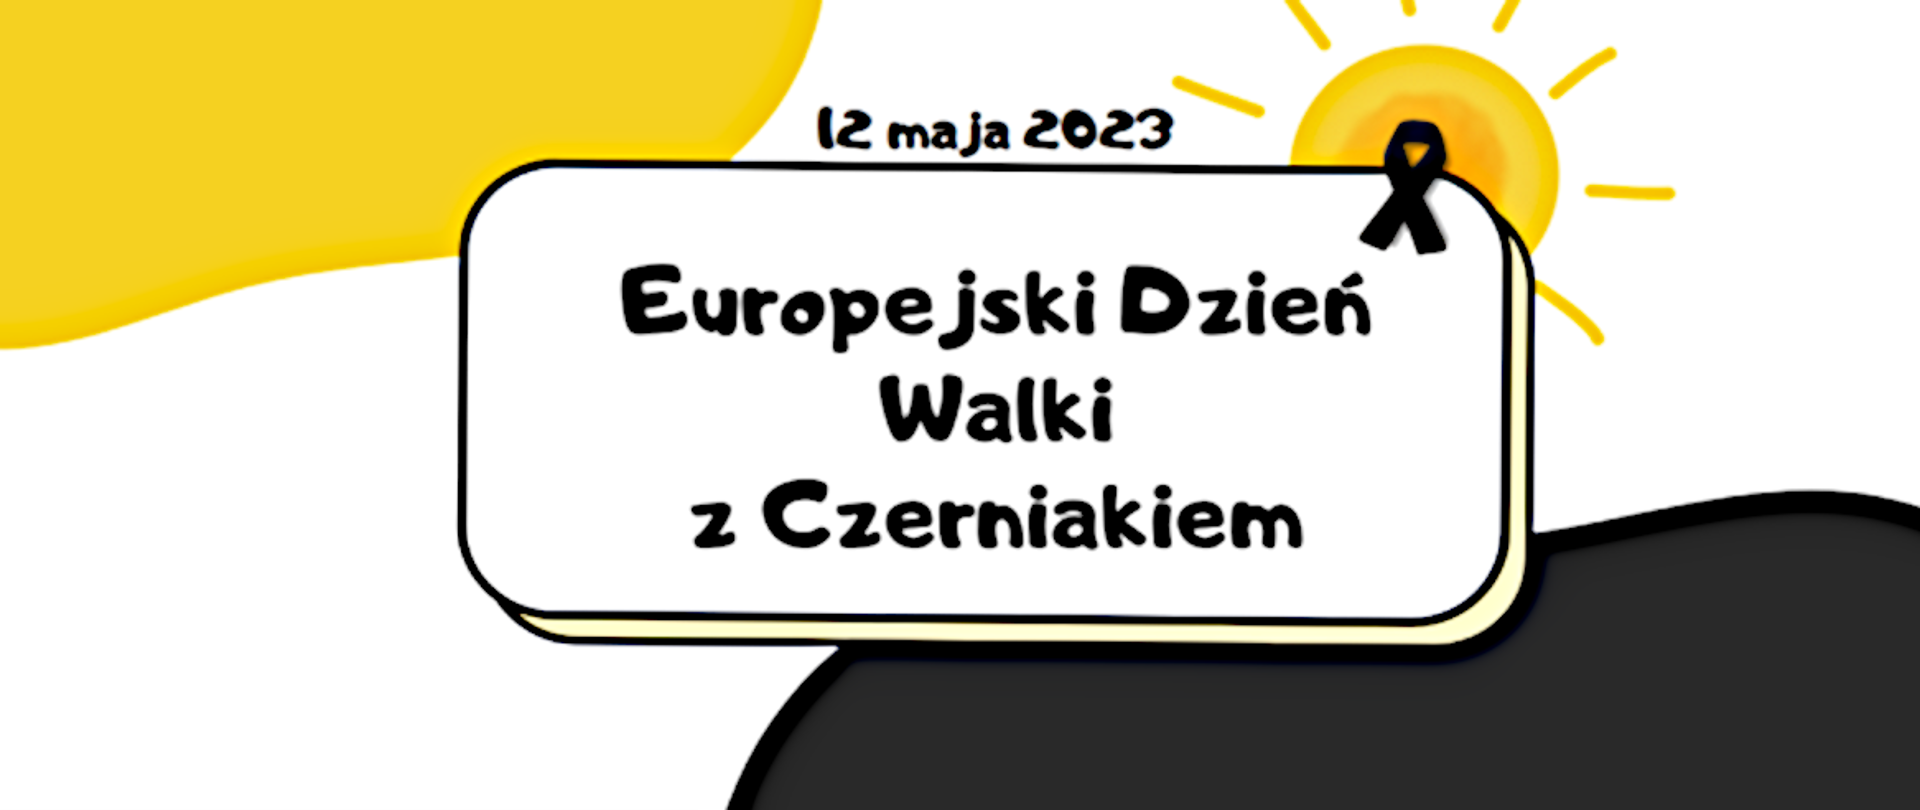 Europejski_dzien_walki_z_czerniakiem